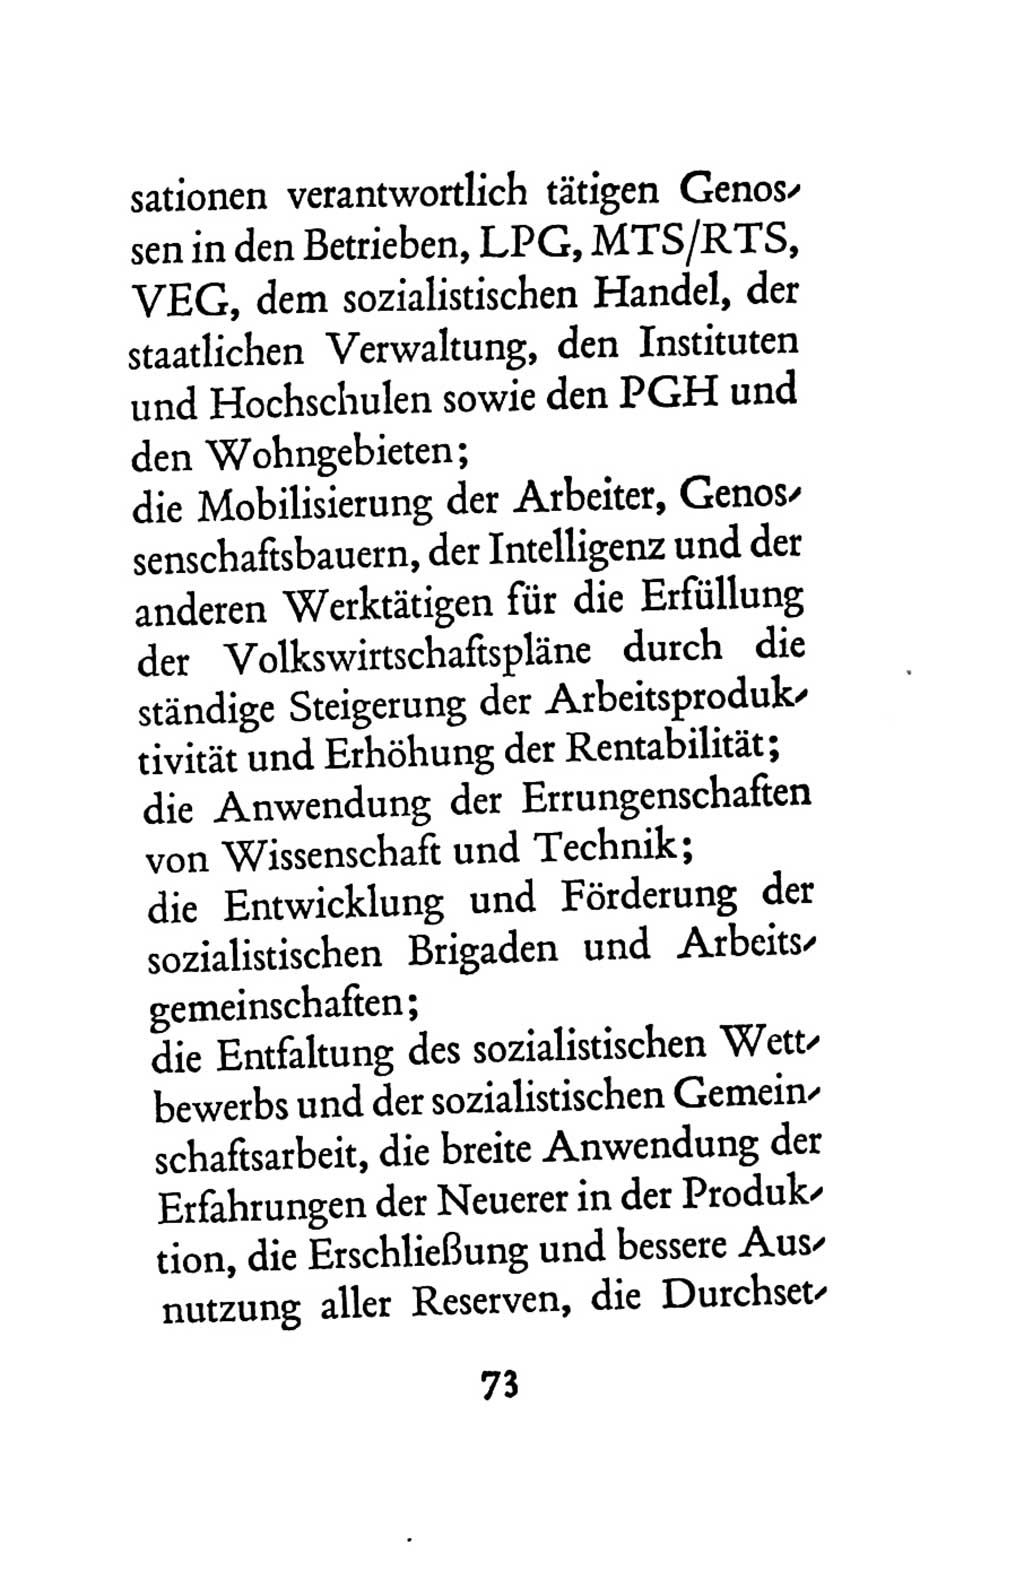 Statut der Sozialistischen Einheitspartei Deutschlands (SED) 1963, Seite 73 (St. SED DDR 1963, S. 73)